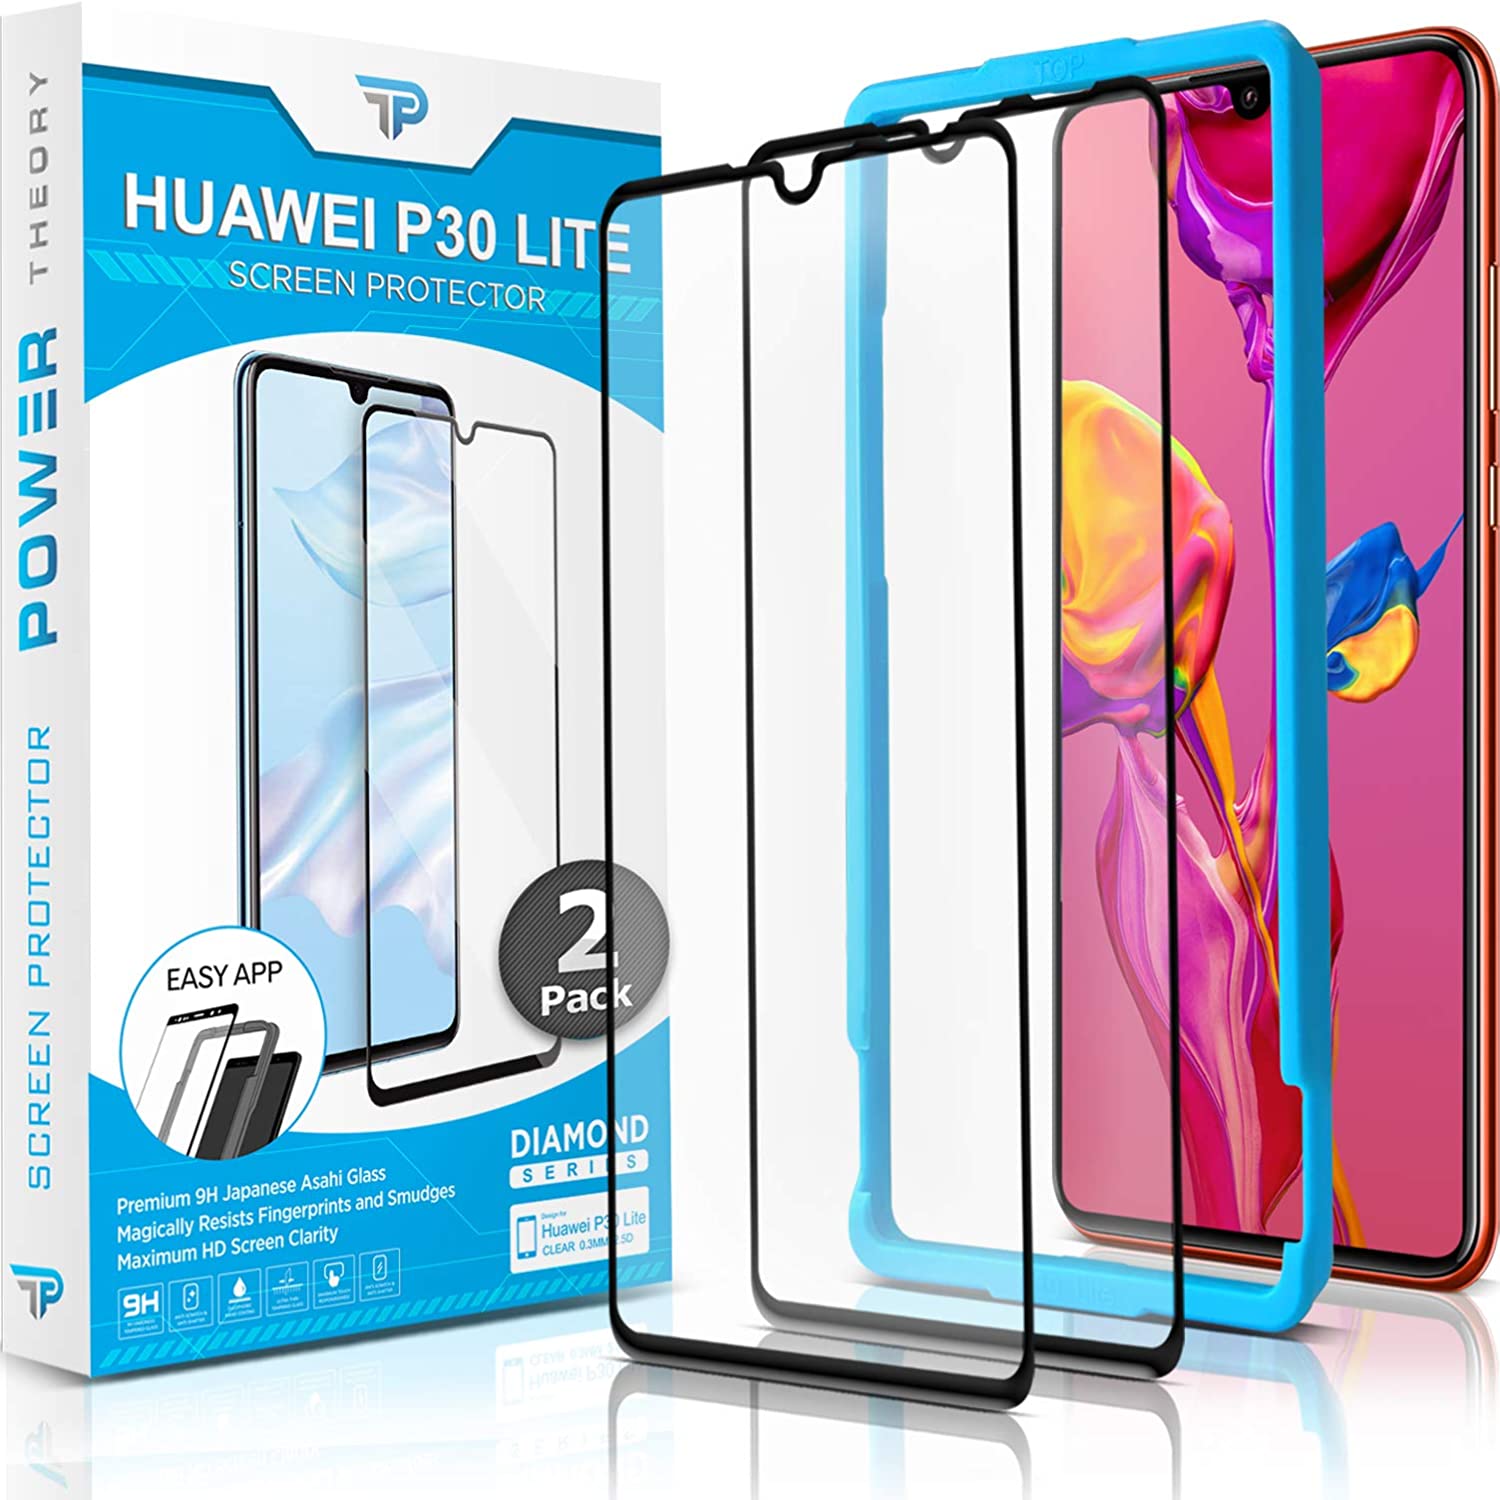 Power Theory Schutzfolie für Huawei P30 Lite (2 Stück) - 3D Schutzfolie mit Schablone